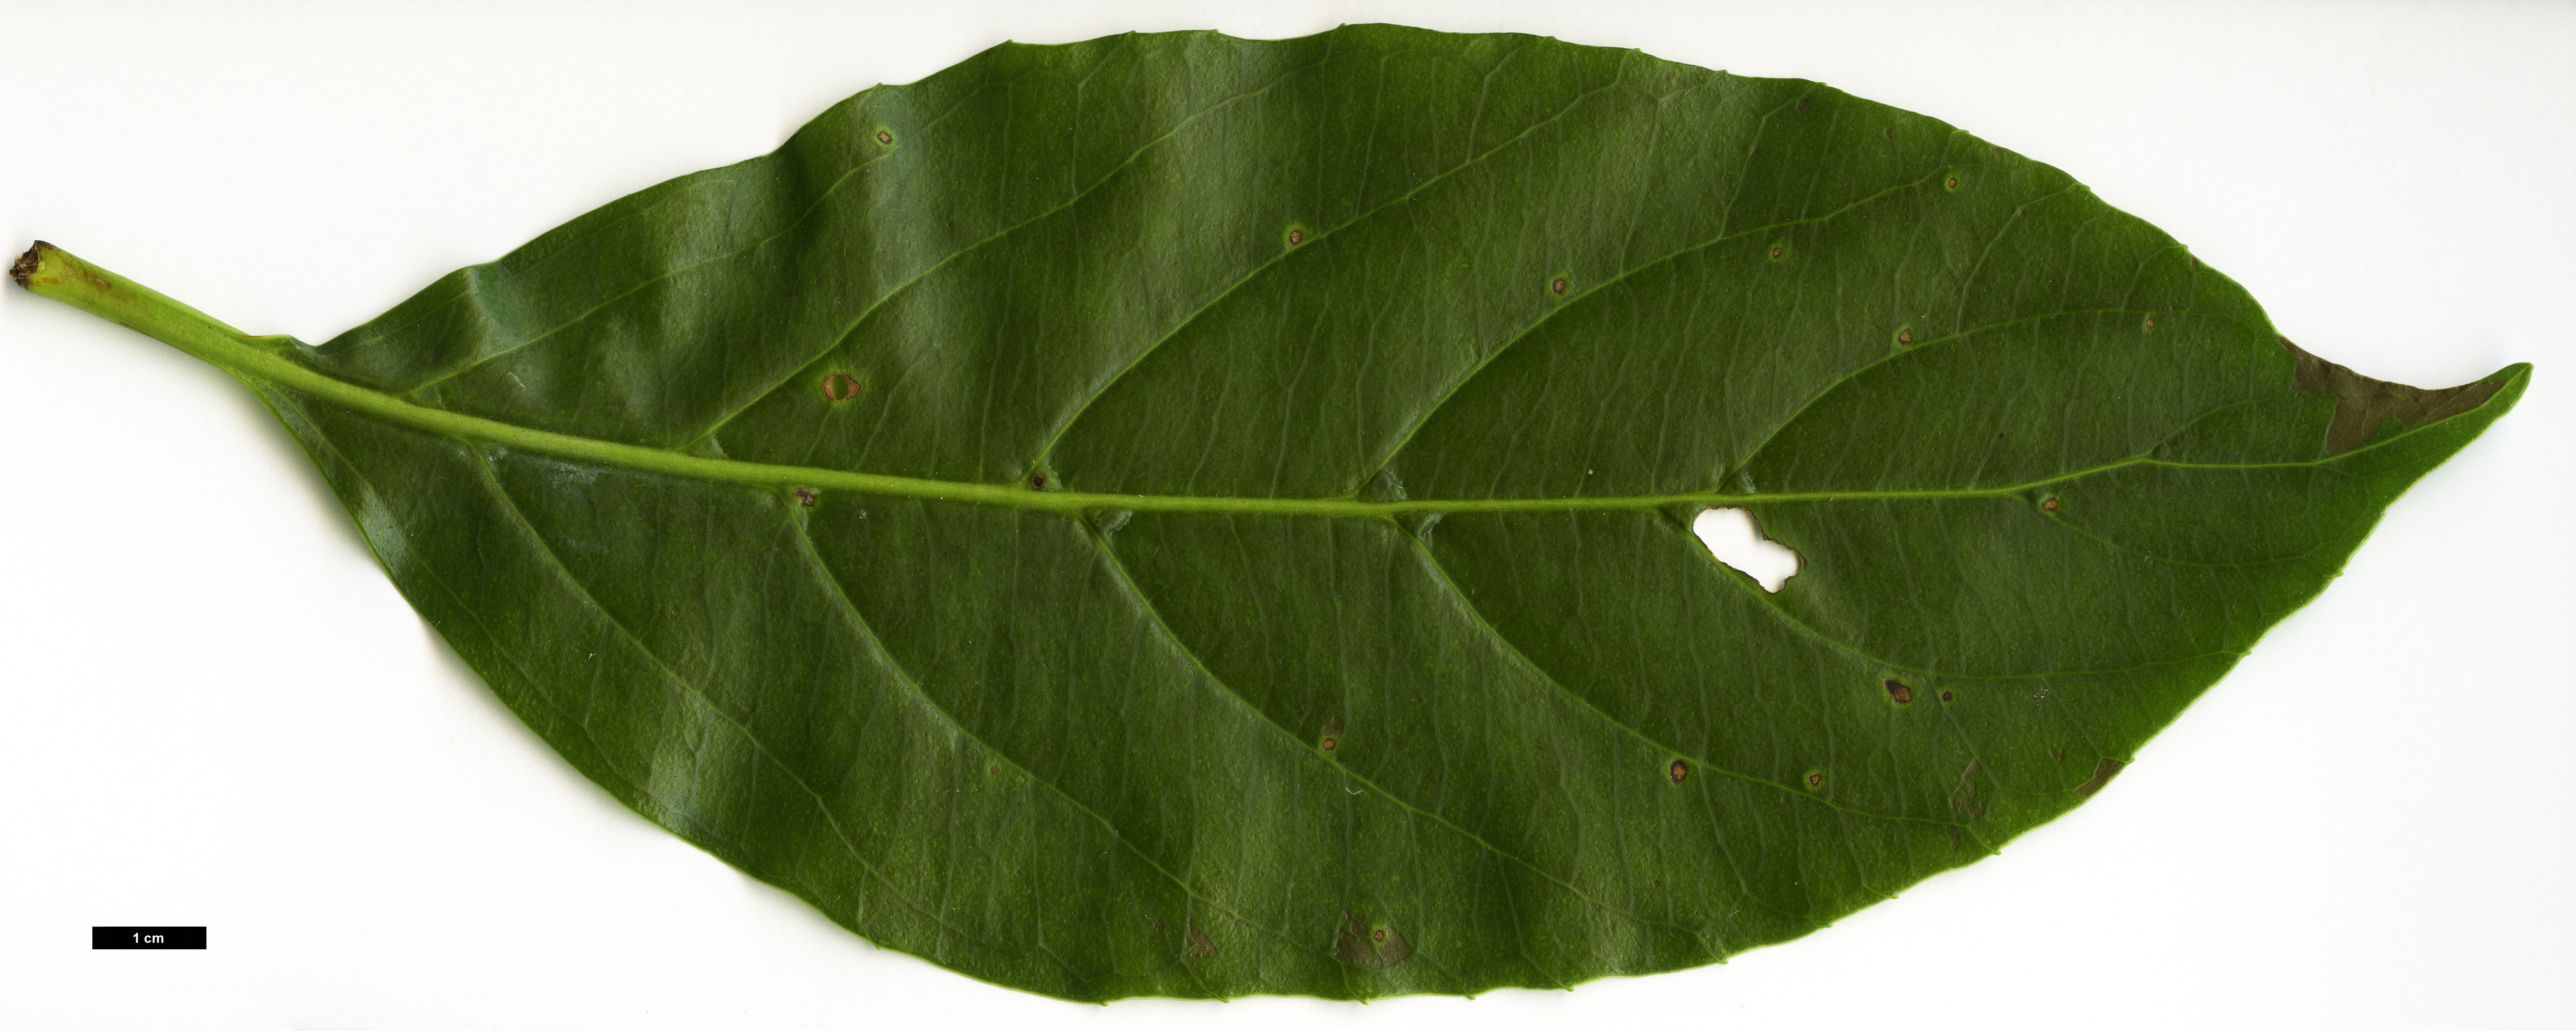 High resolution image: Family: Adoxaceae - Genus: Viburnum - Taxon: odoratissimum - SpeciesSub: var. arboricola 